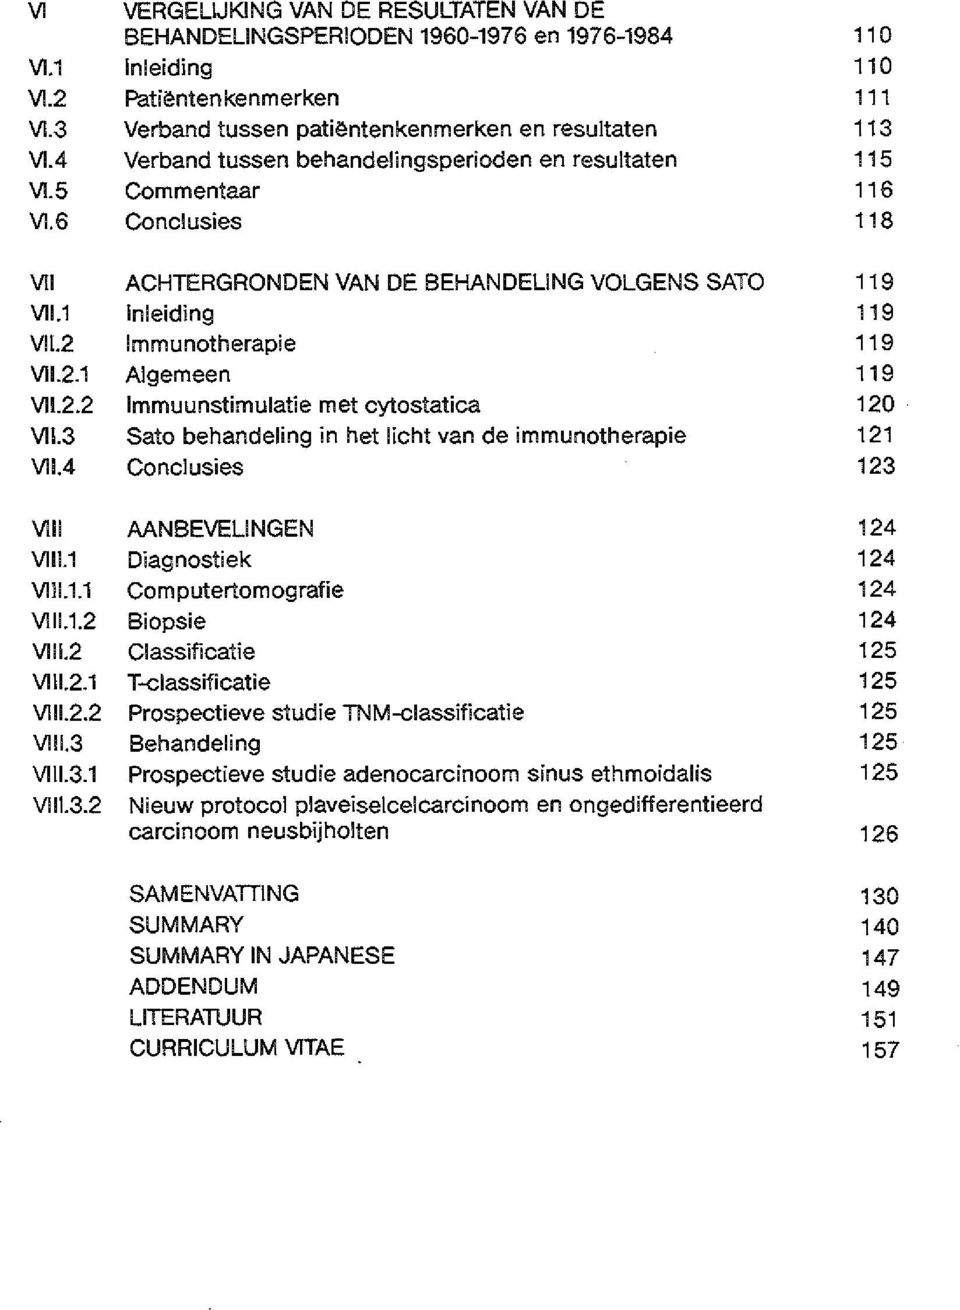 2.1 Algemeen 119 Vll.2.2 lmmuunstimulatie met cytostatica 120 Vll.3 Sato behandeling in het Iicht van de immunotherapie 121 Vll.4 Conclusies 123 VIII AANBEVELINGEN 124 Vlll.1 Diagnostiek 124 Vlll.1.1 Computertomografie 124 Vlll.